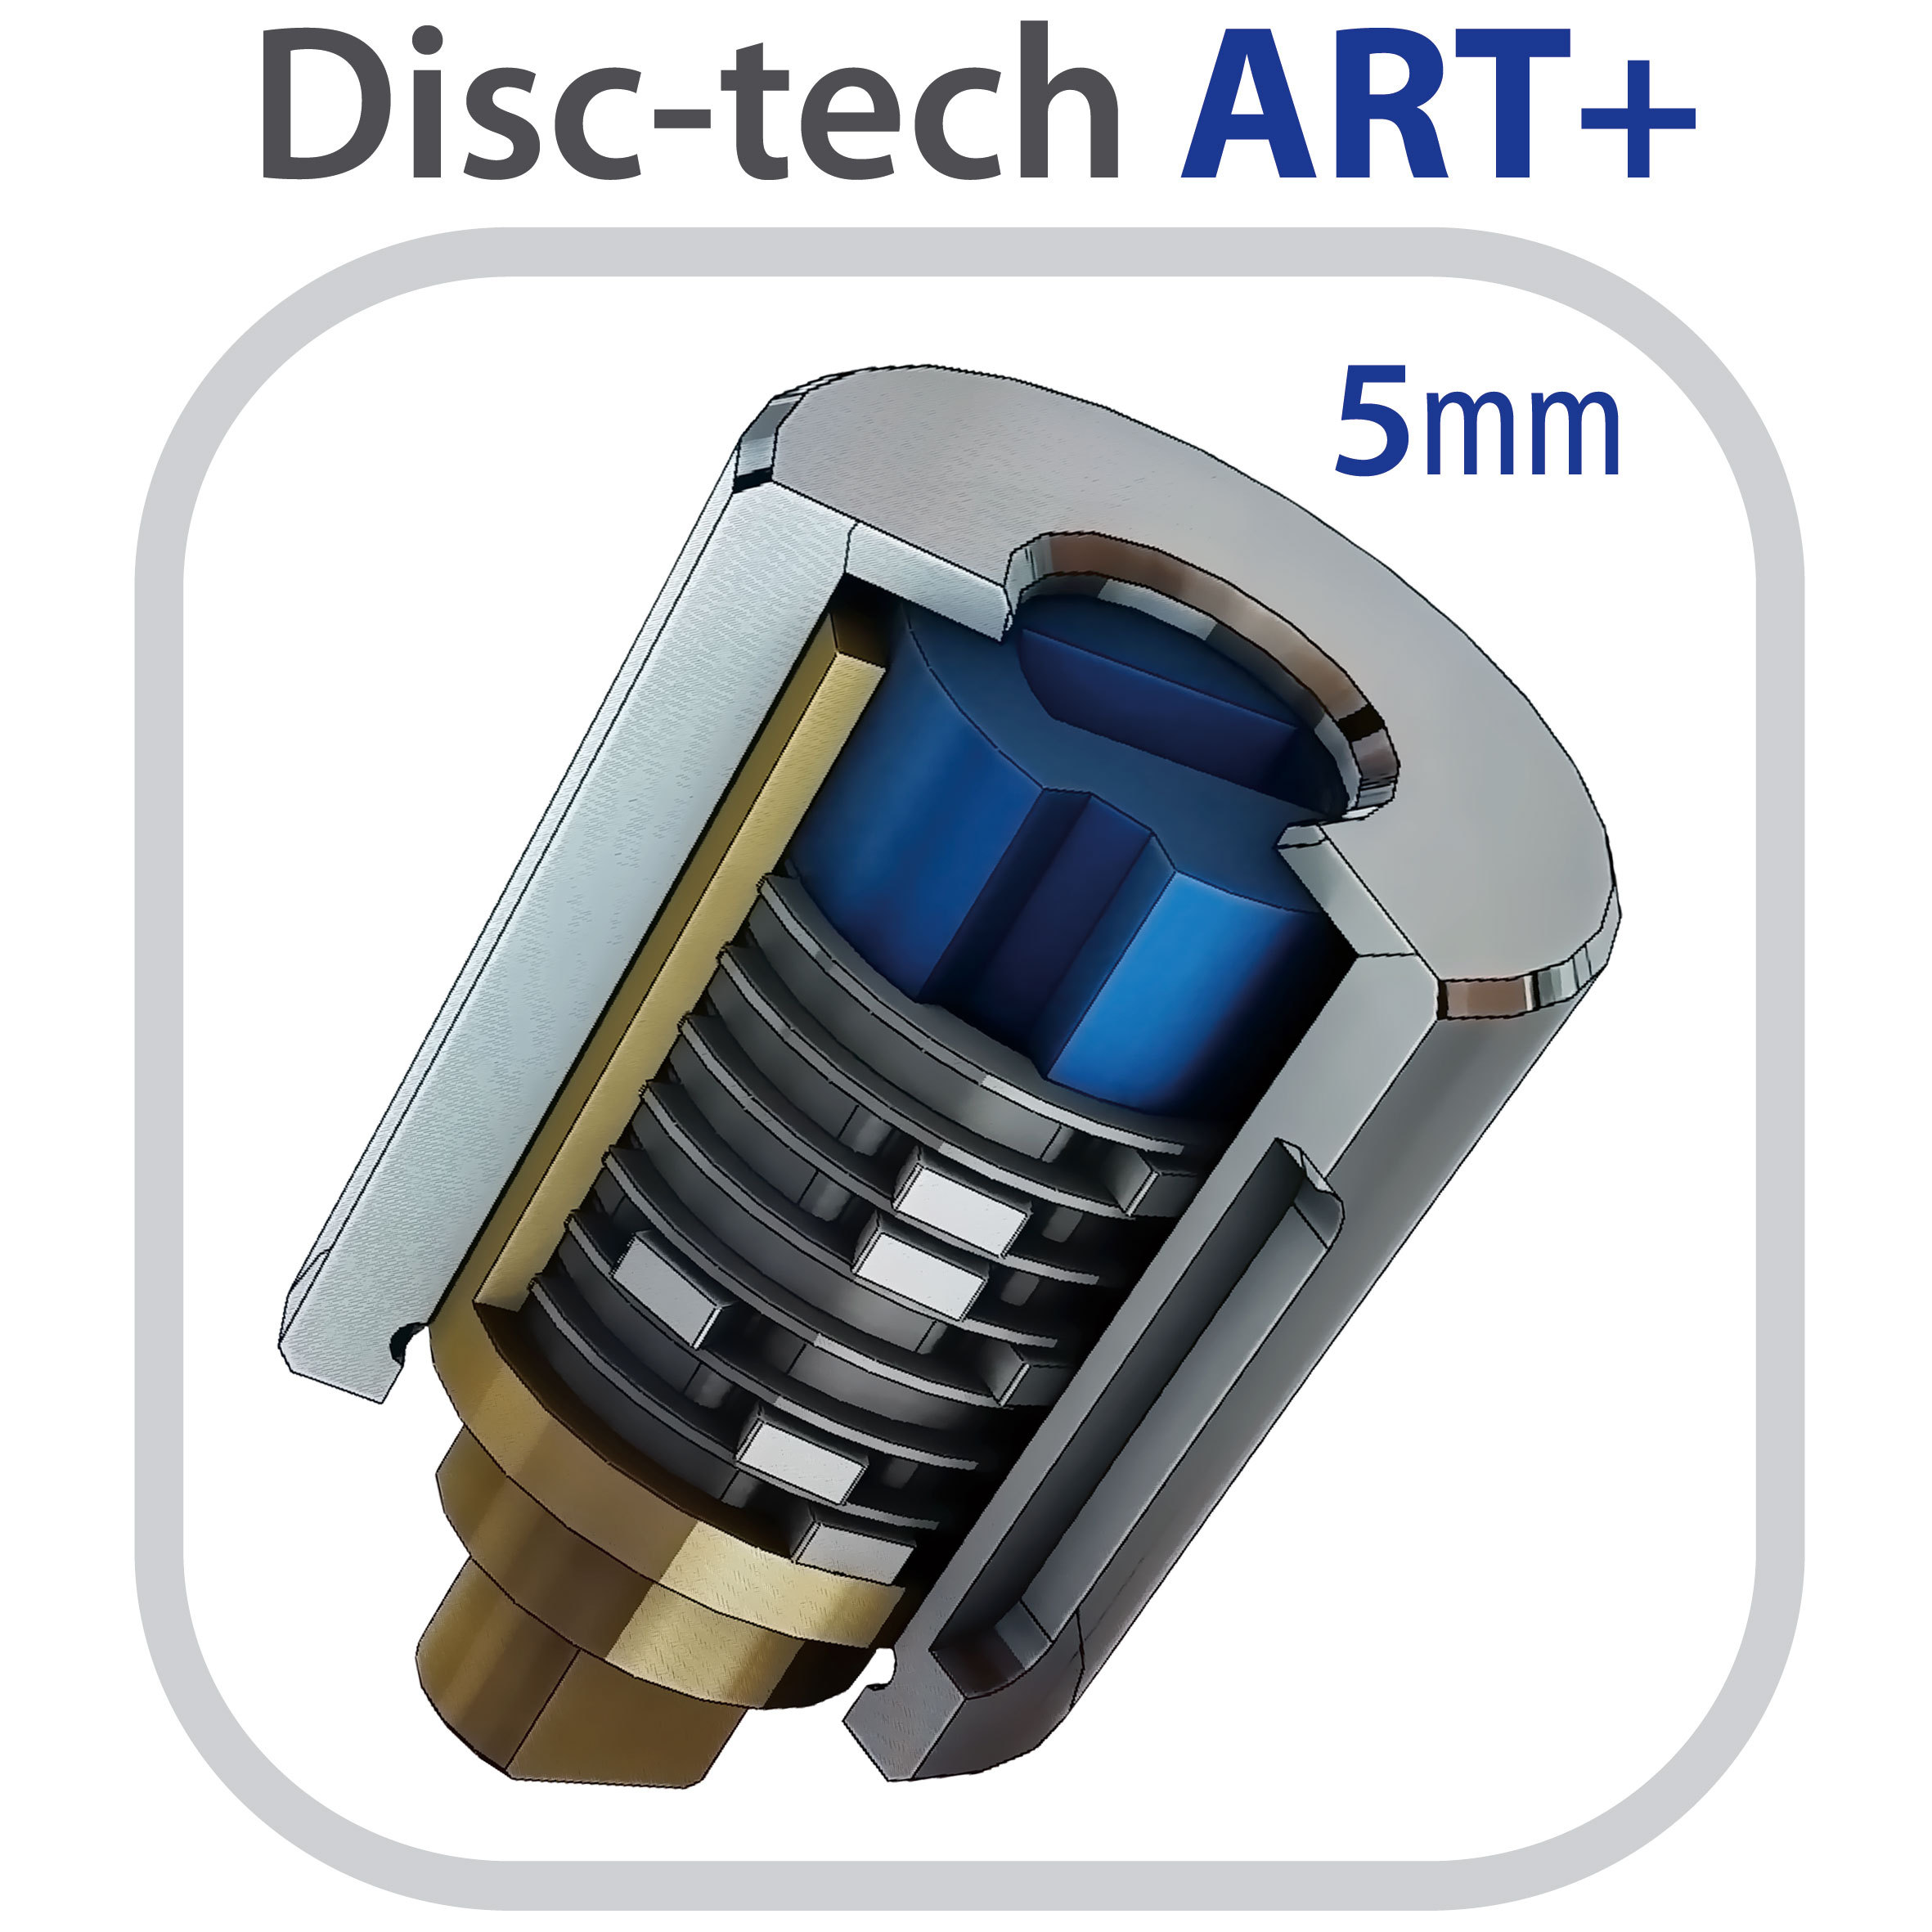 ARTAGO-disc-tech-ART